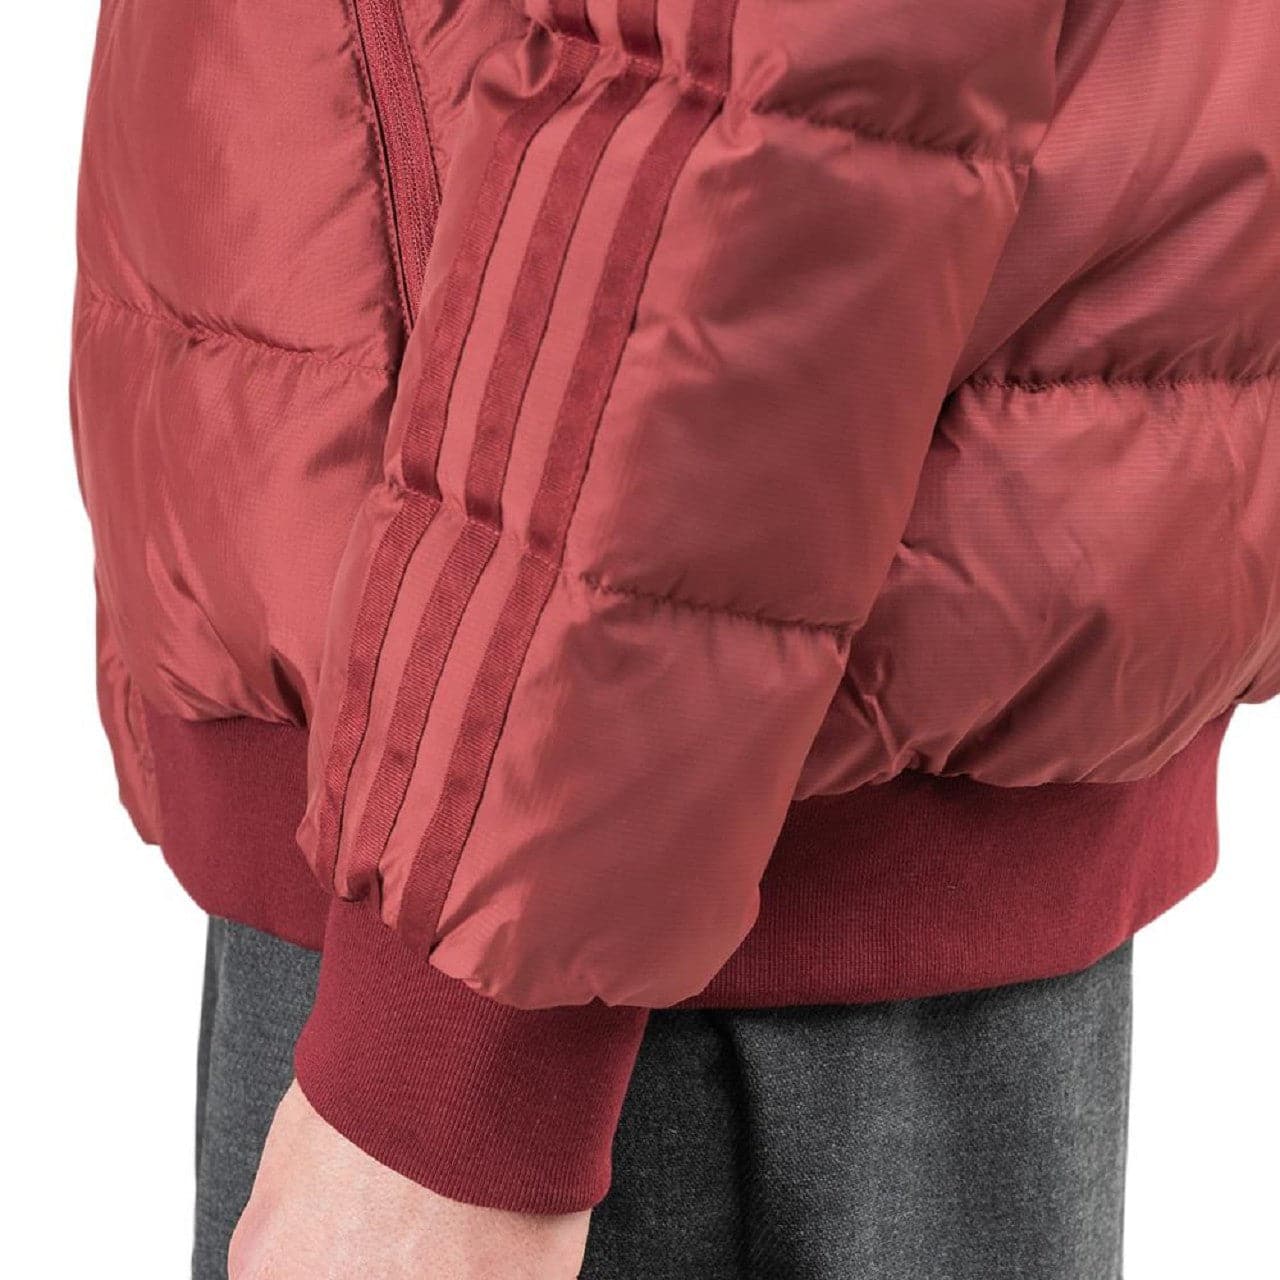 adidas x Jonah Hill Puffer Jacket (Rot)  - Allike Store